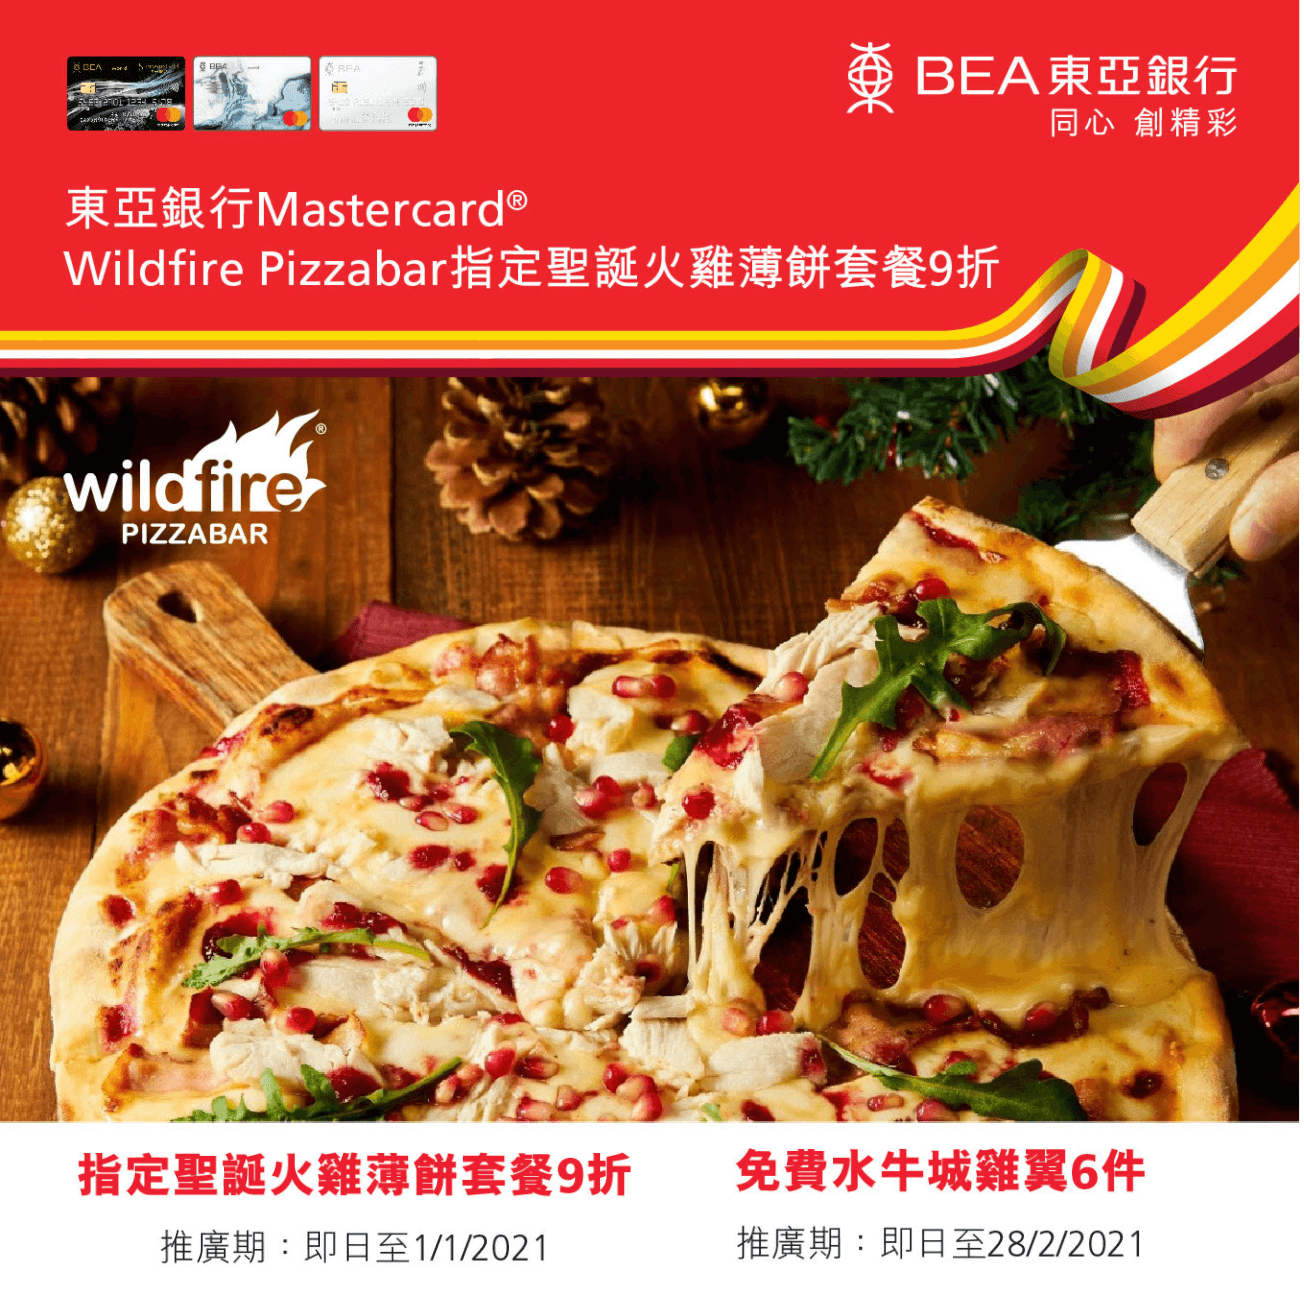 東亞信用卡Wildfire Pizzabar聖誕優惠